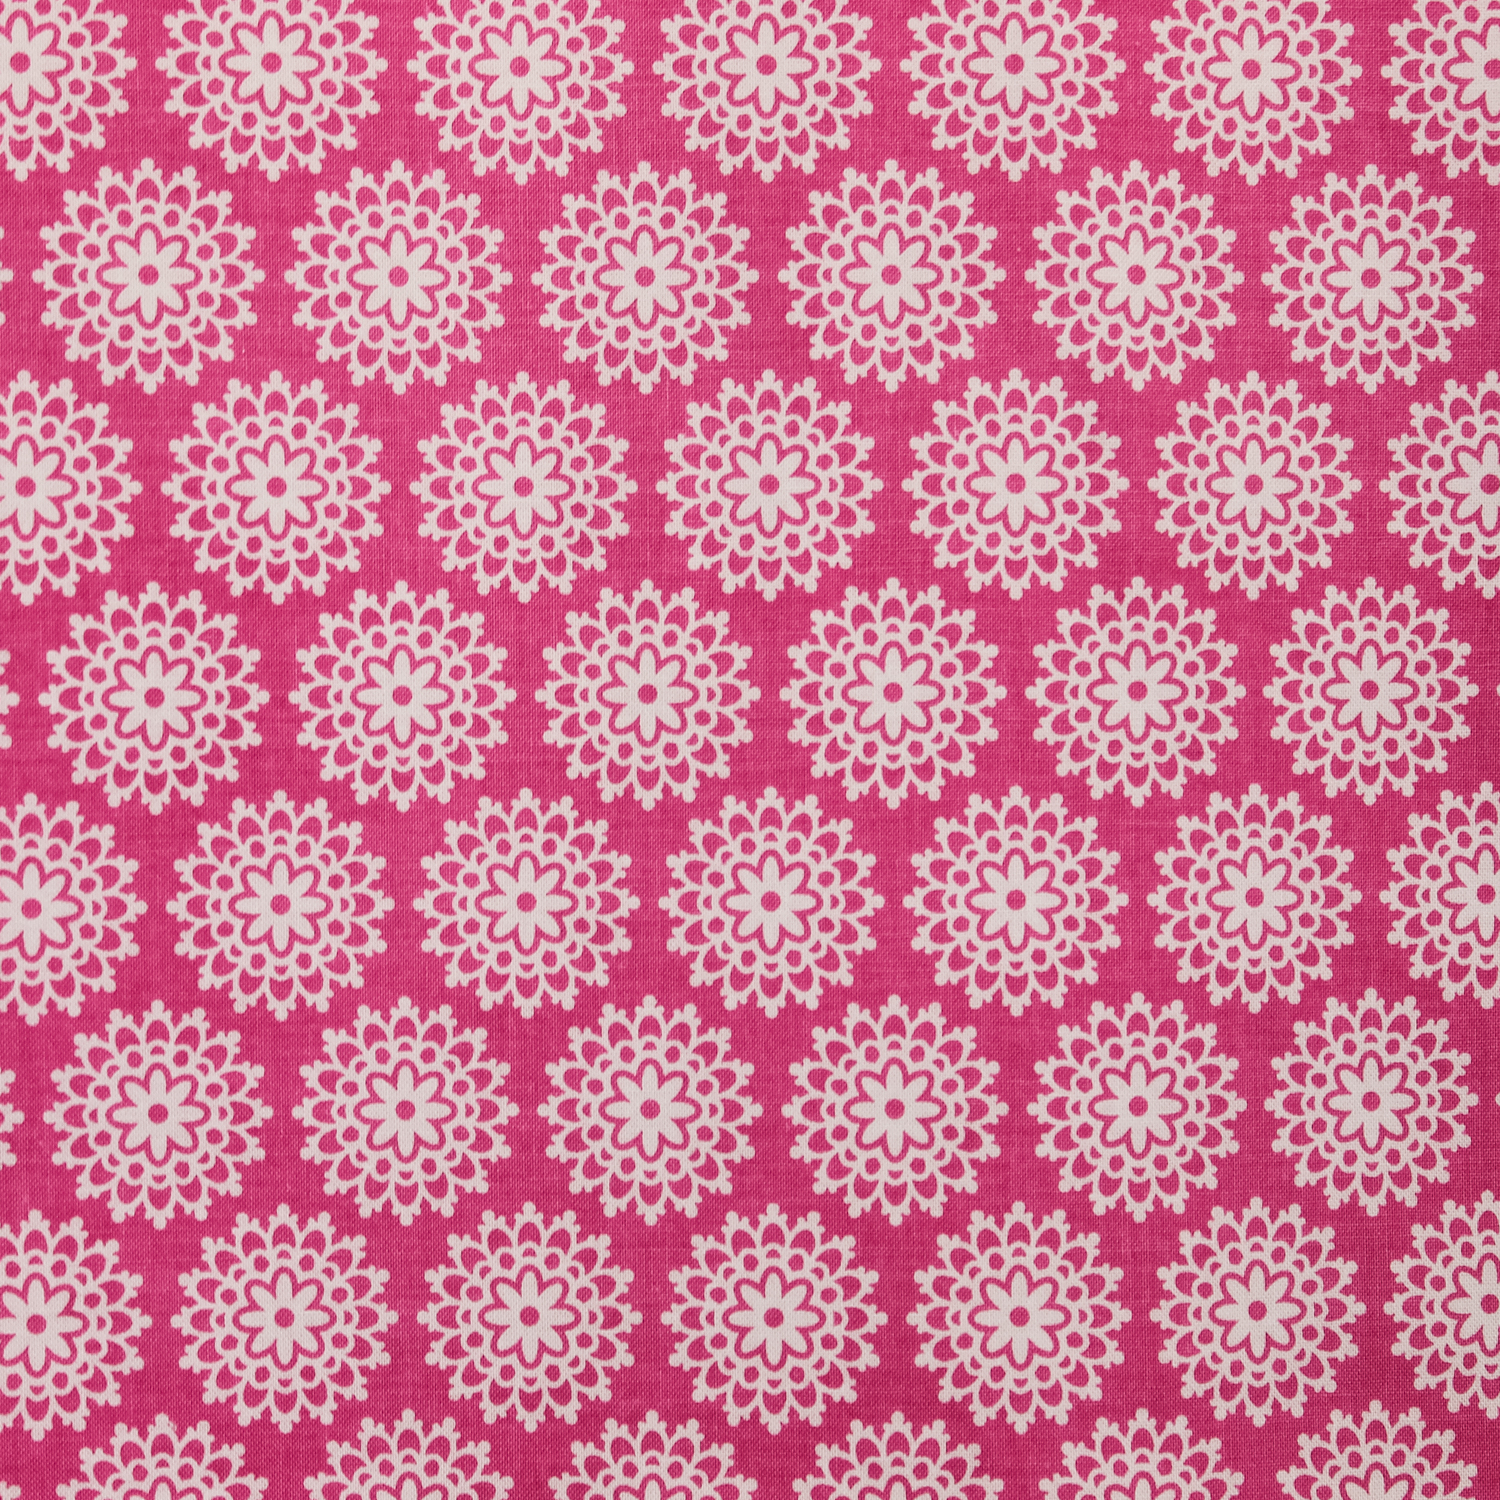 Katoen roze met wit cirkelmotief